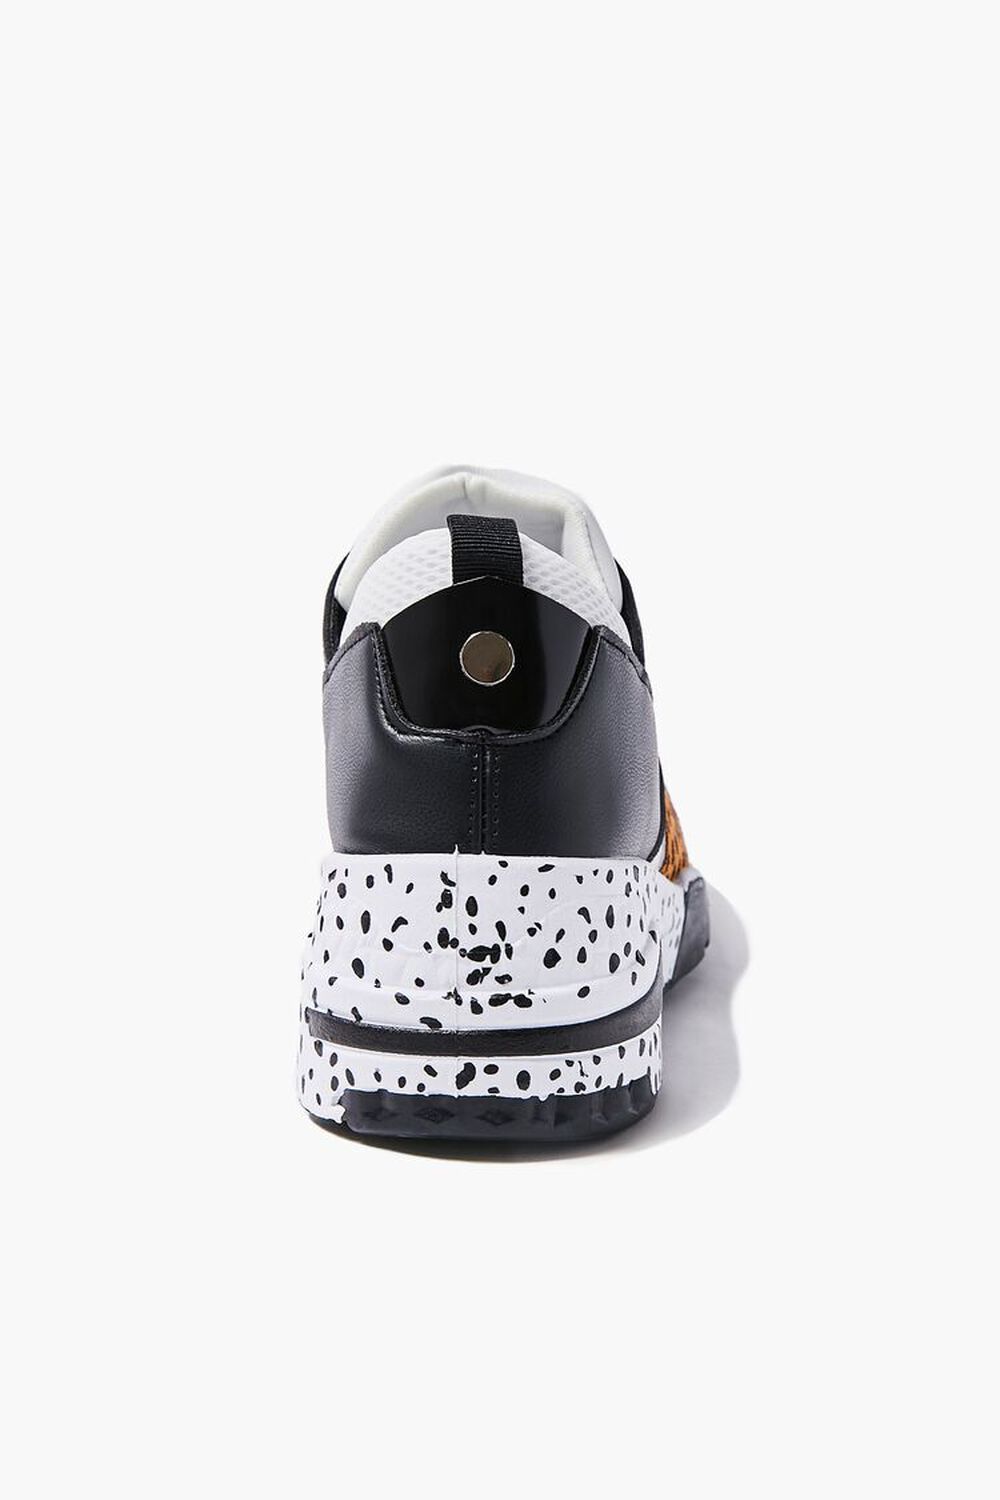 SILVER/MULTI Patternblock Cheetah Print Sneakers, image 2